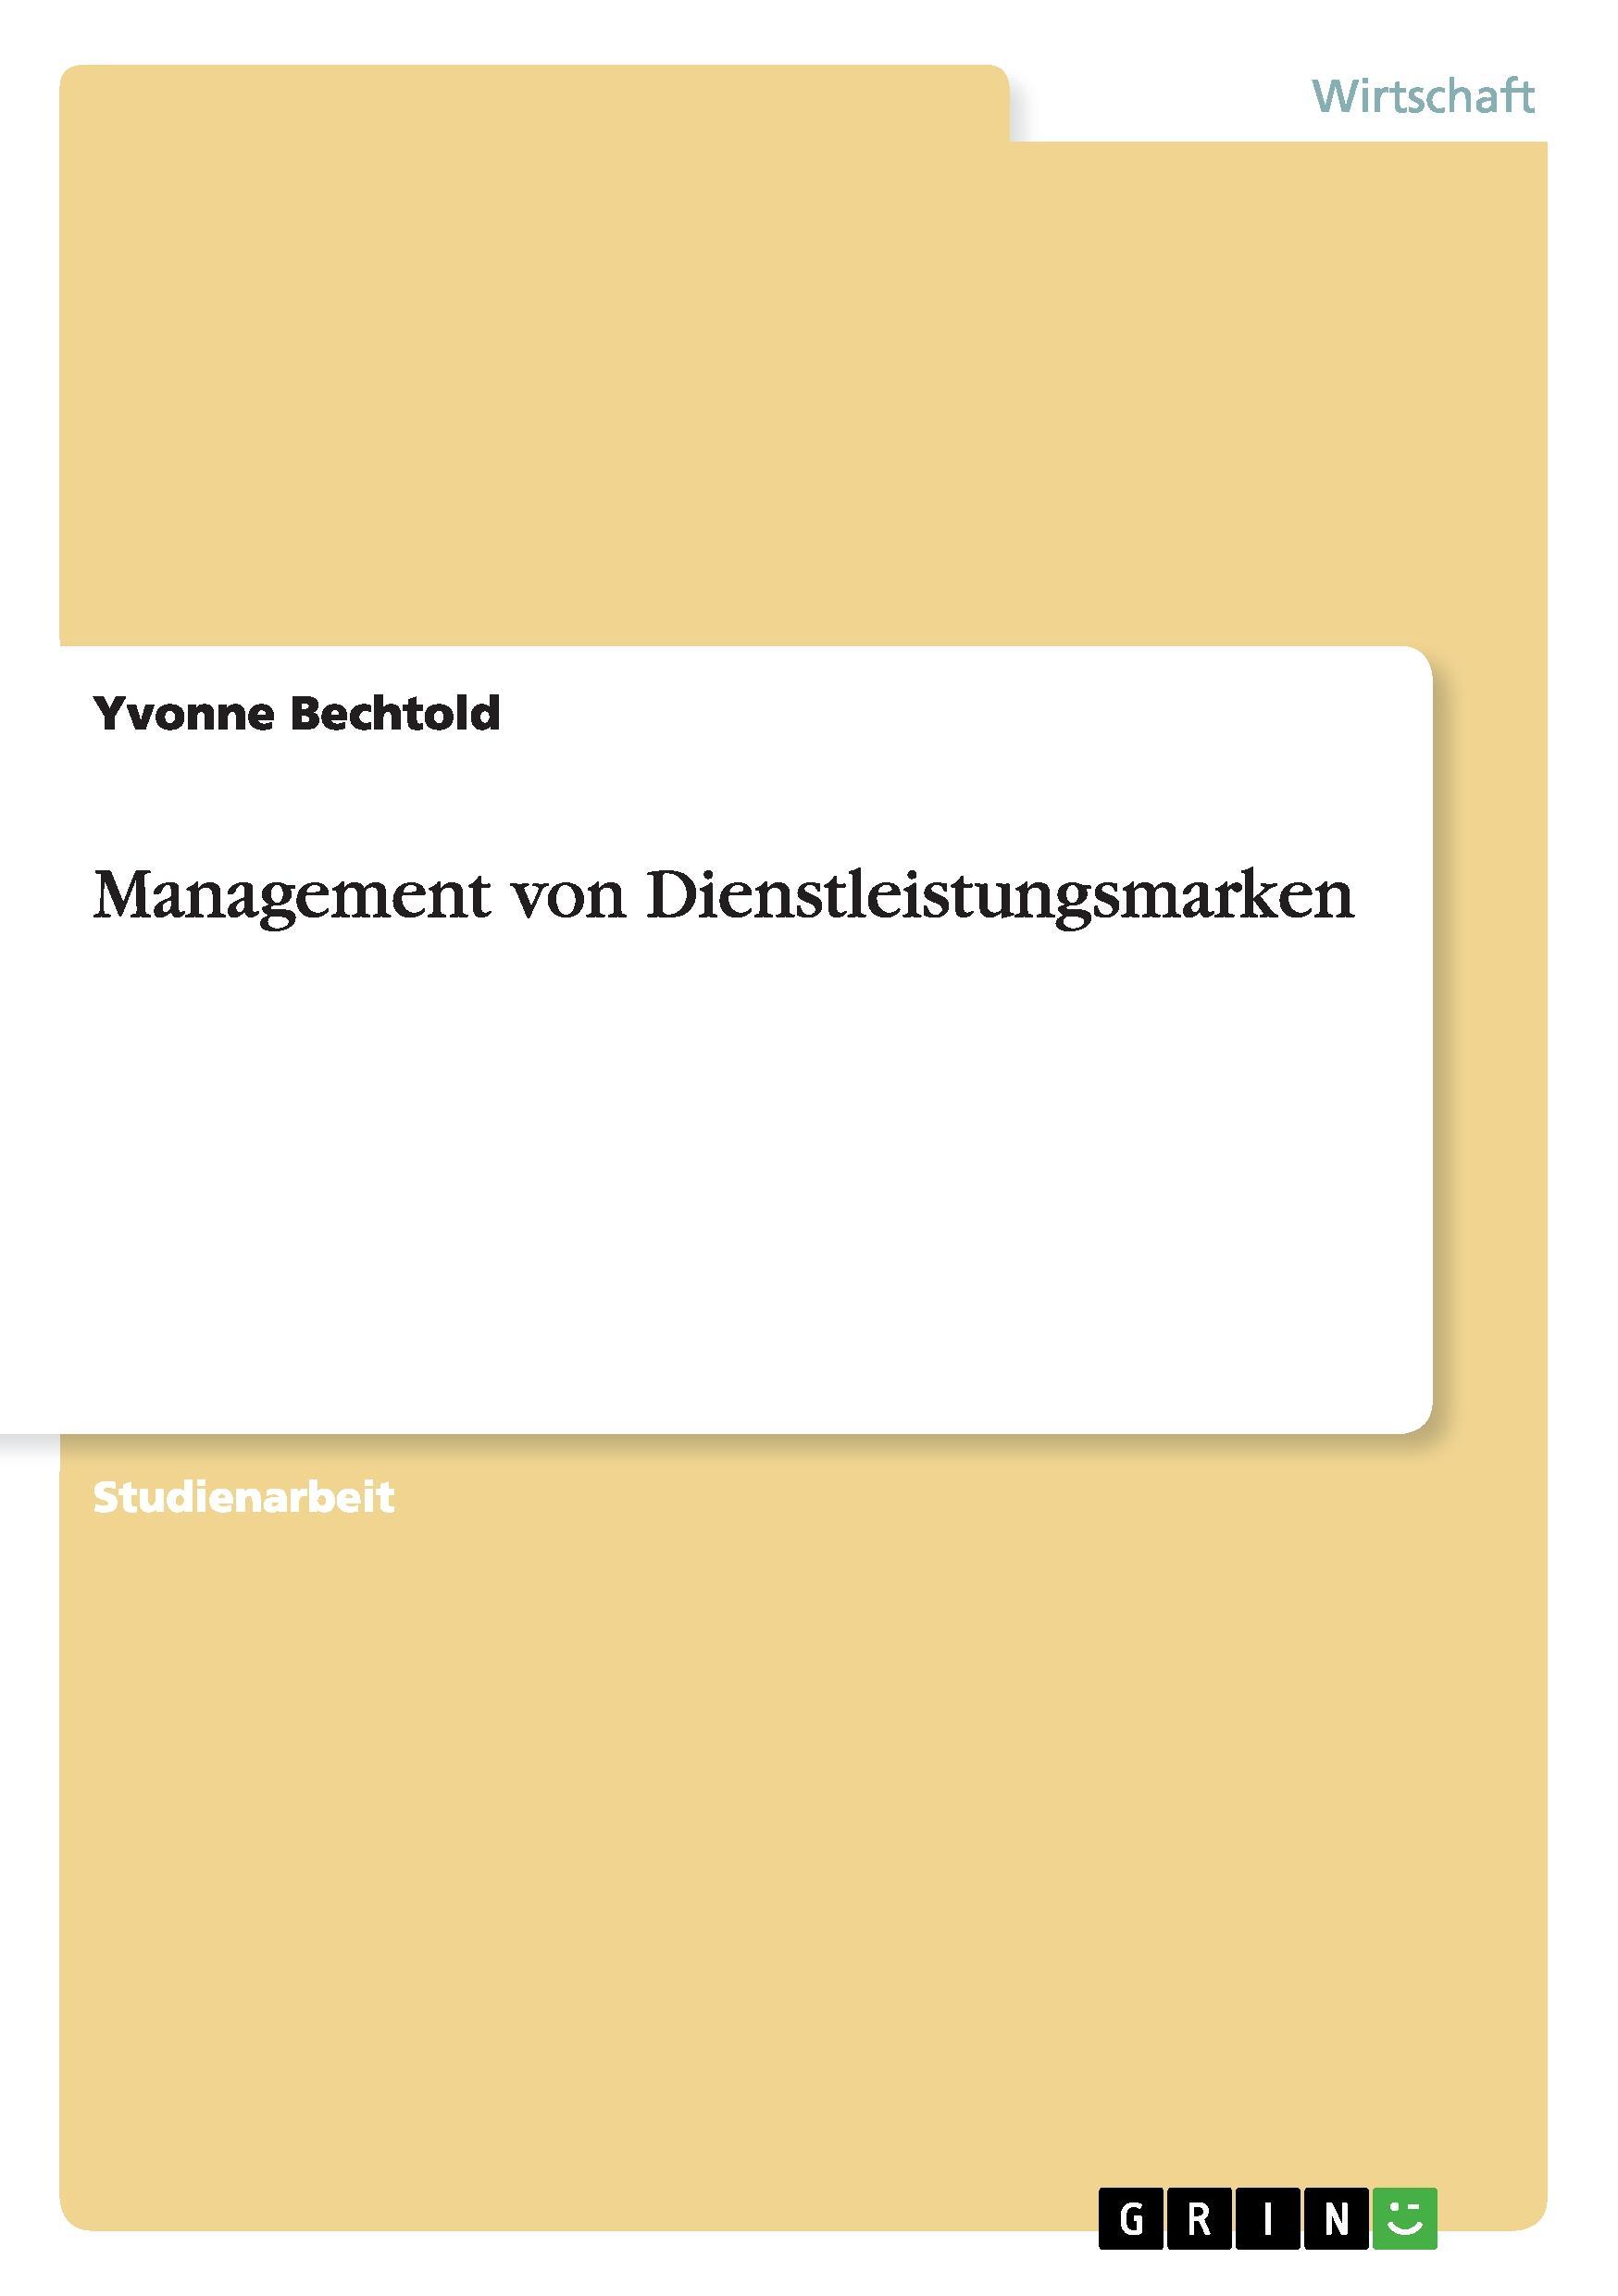 Management von Dienstleistungsmarken - Bechtold, Yvonne